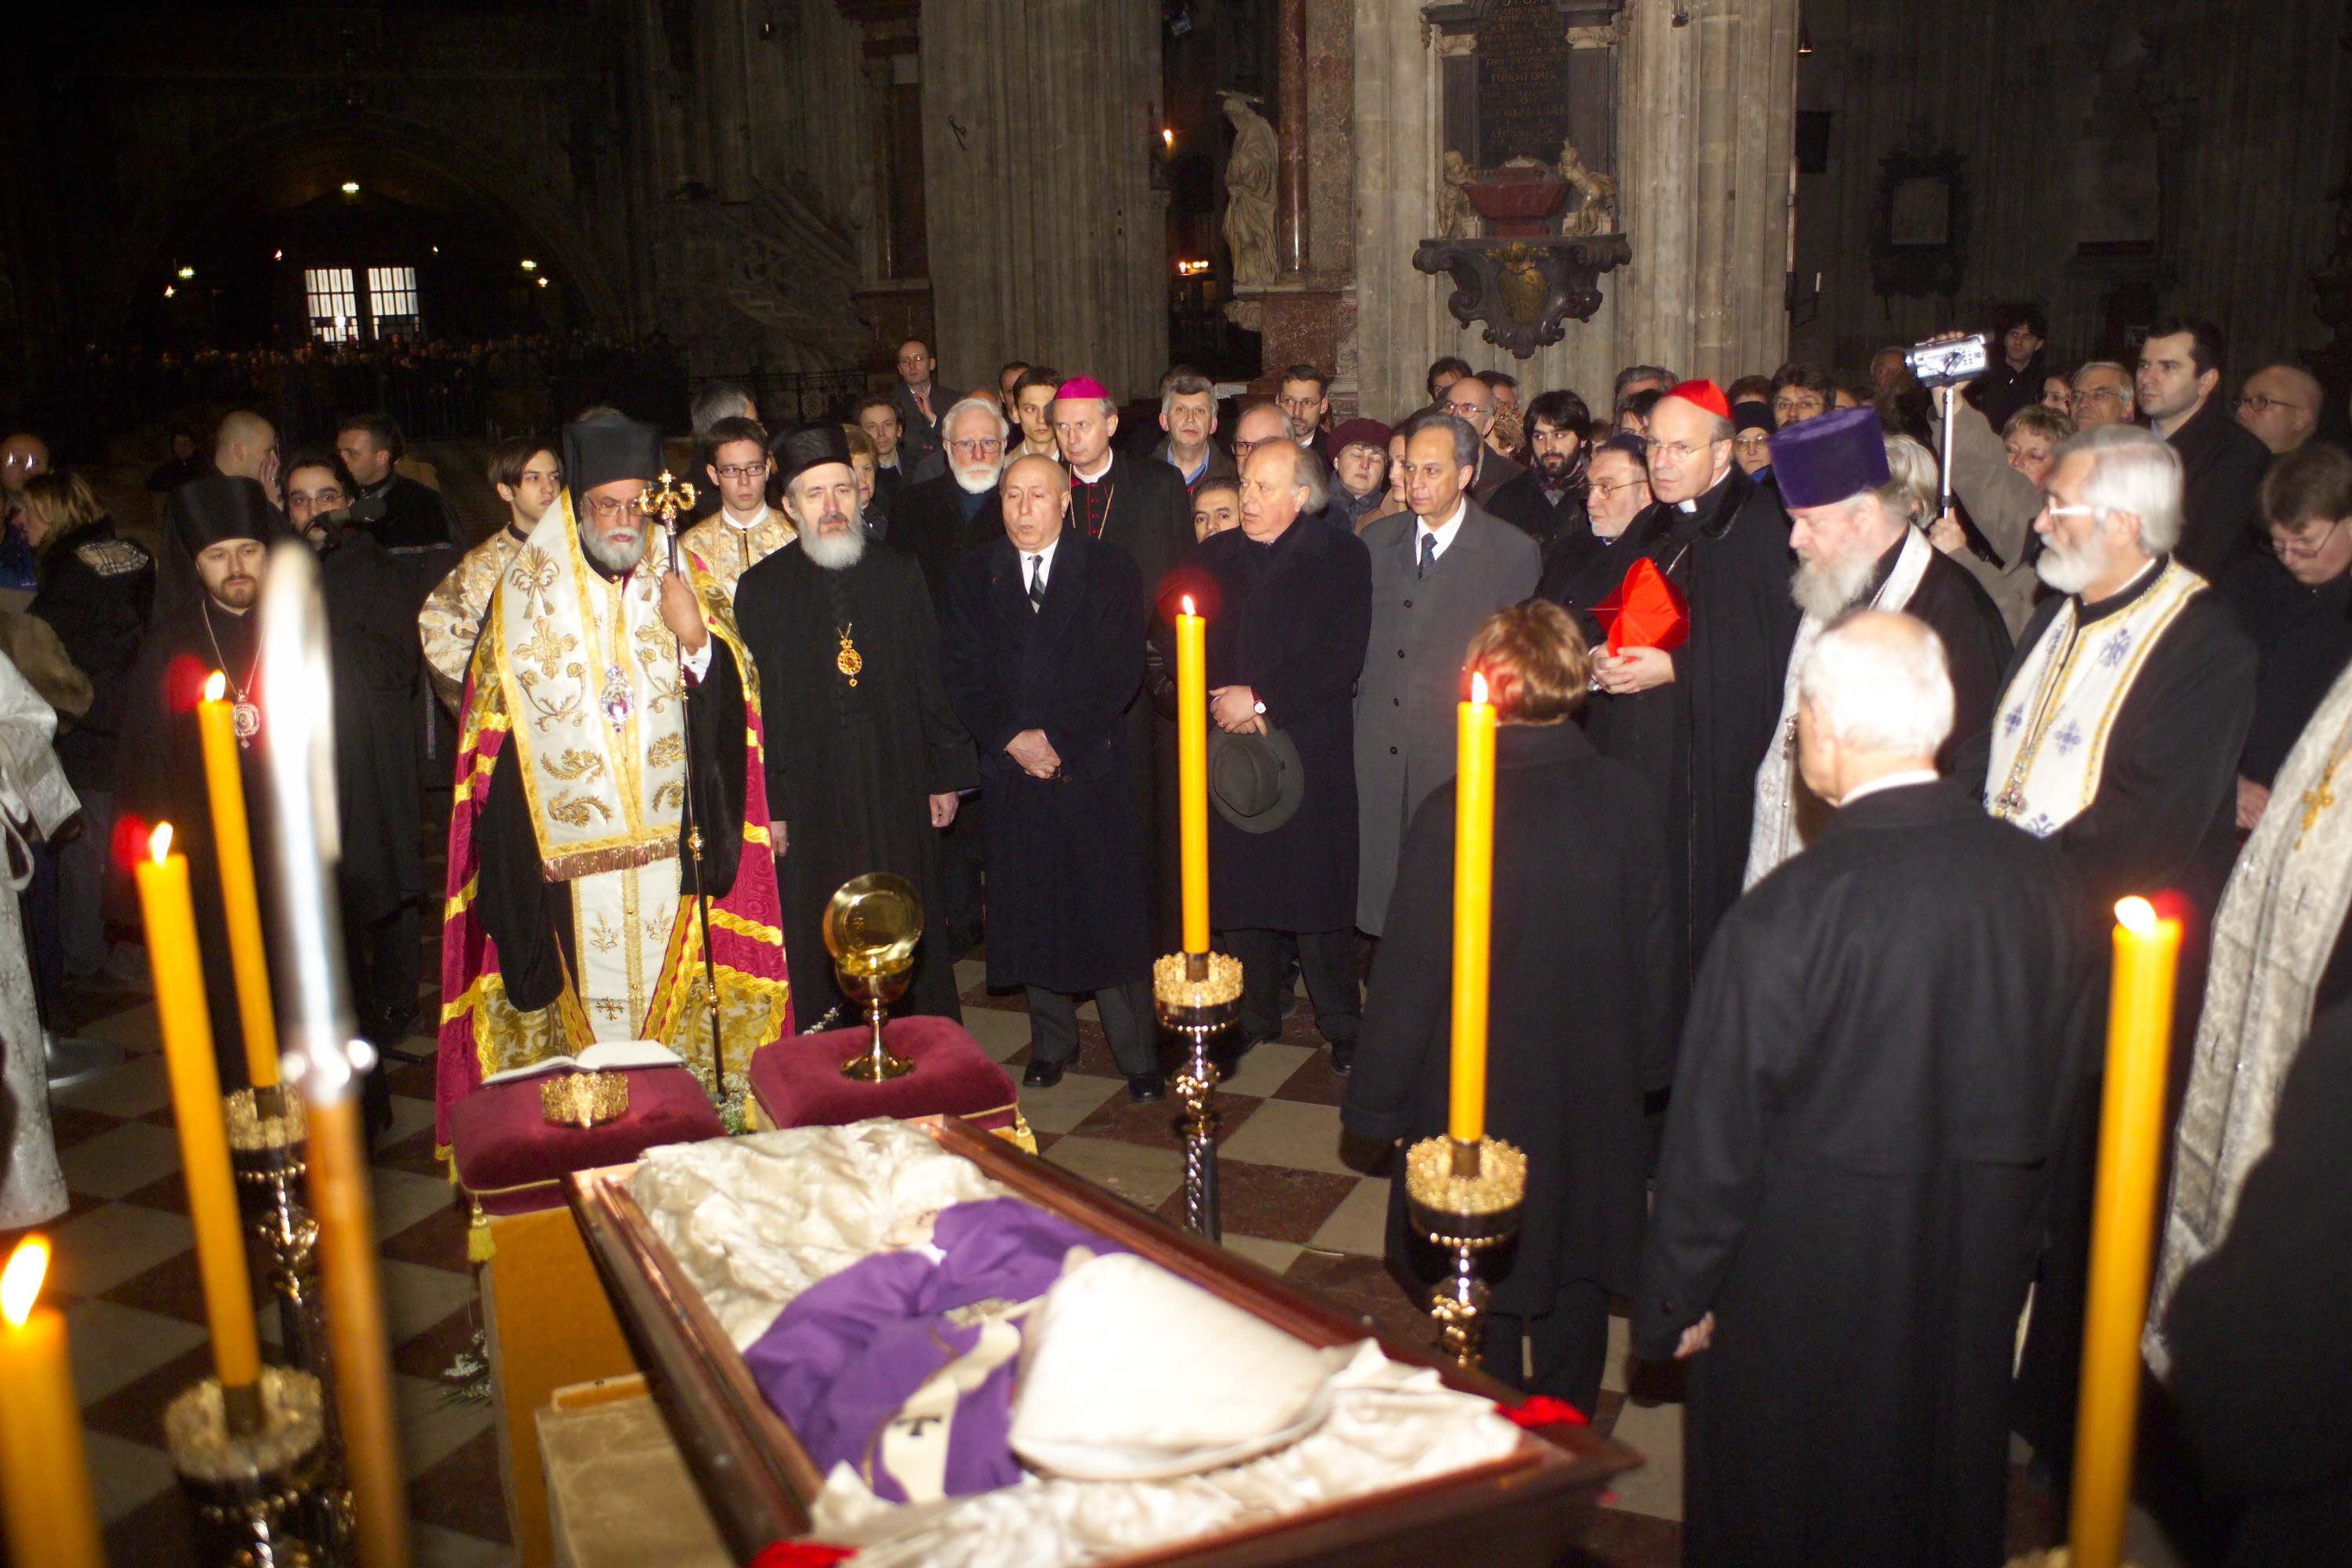 Orthodoxes Totengedenken am Sarg von Kardinal König; Staikos, Hilarion Alfejew, Kardinal Schönborn am 26.3.2004